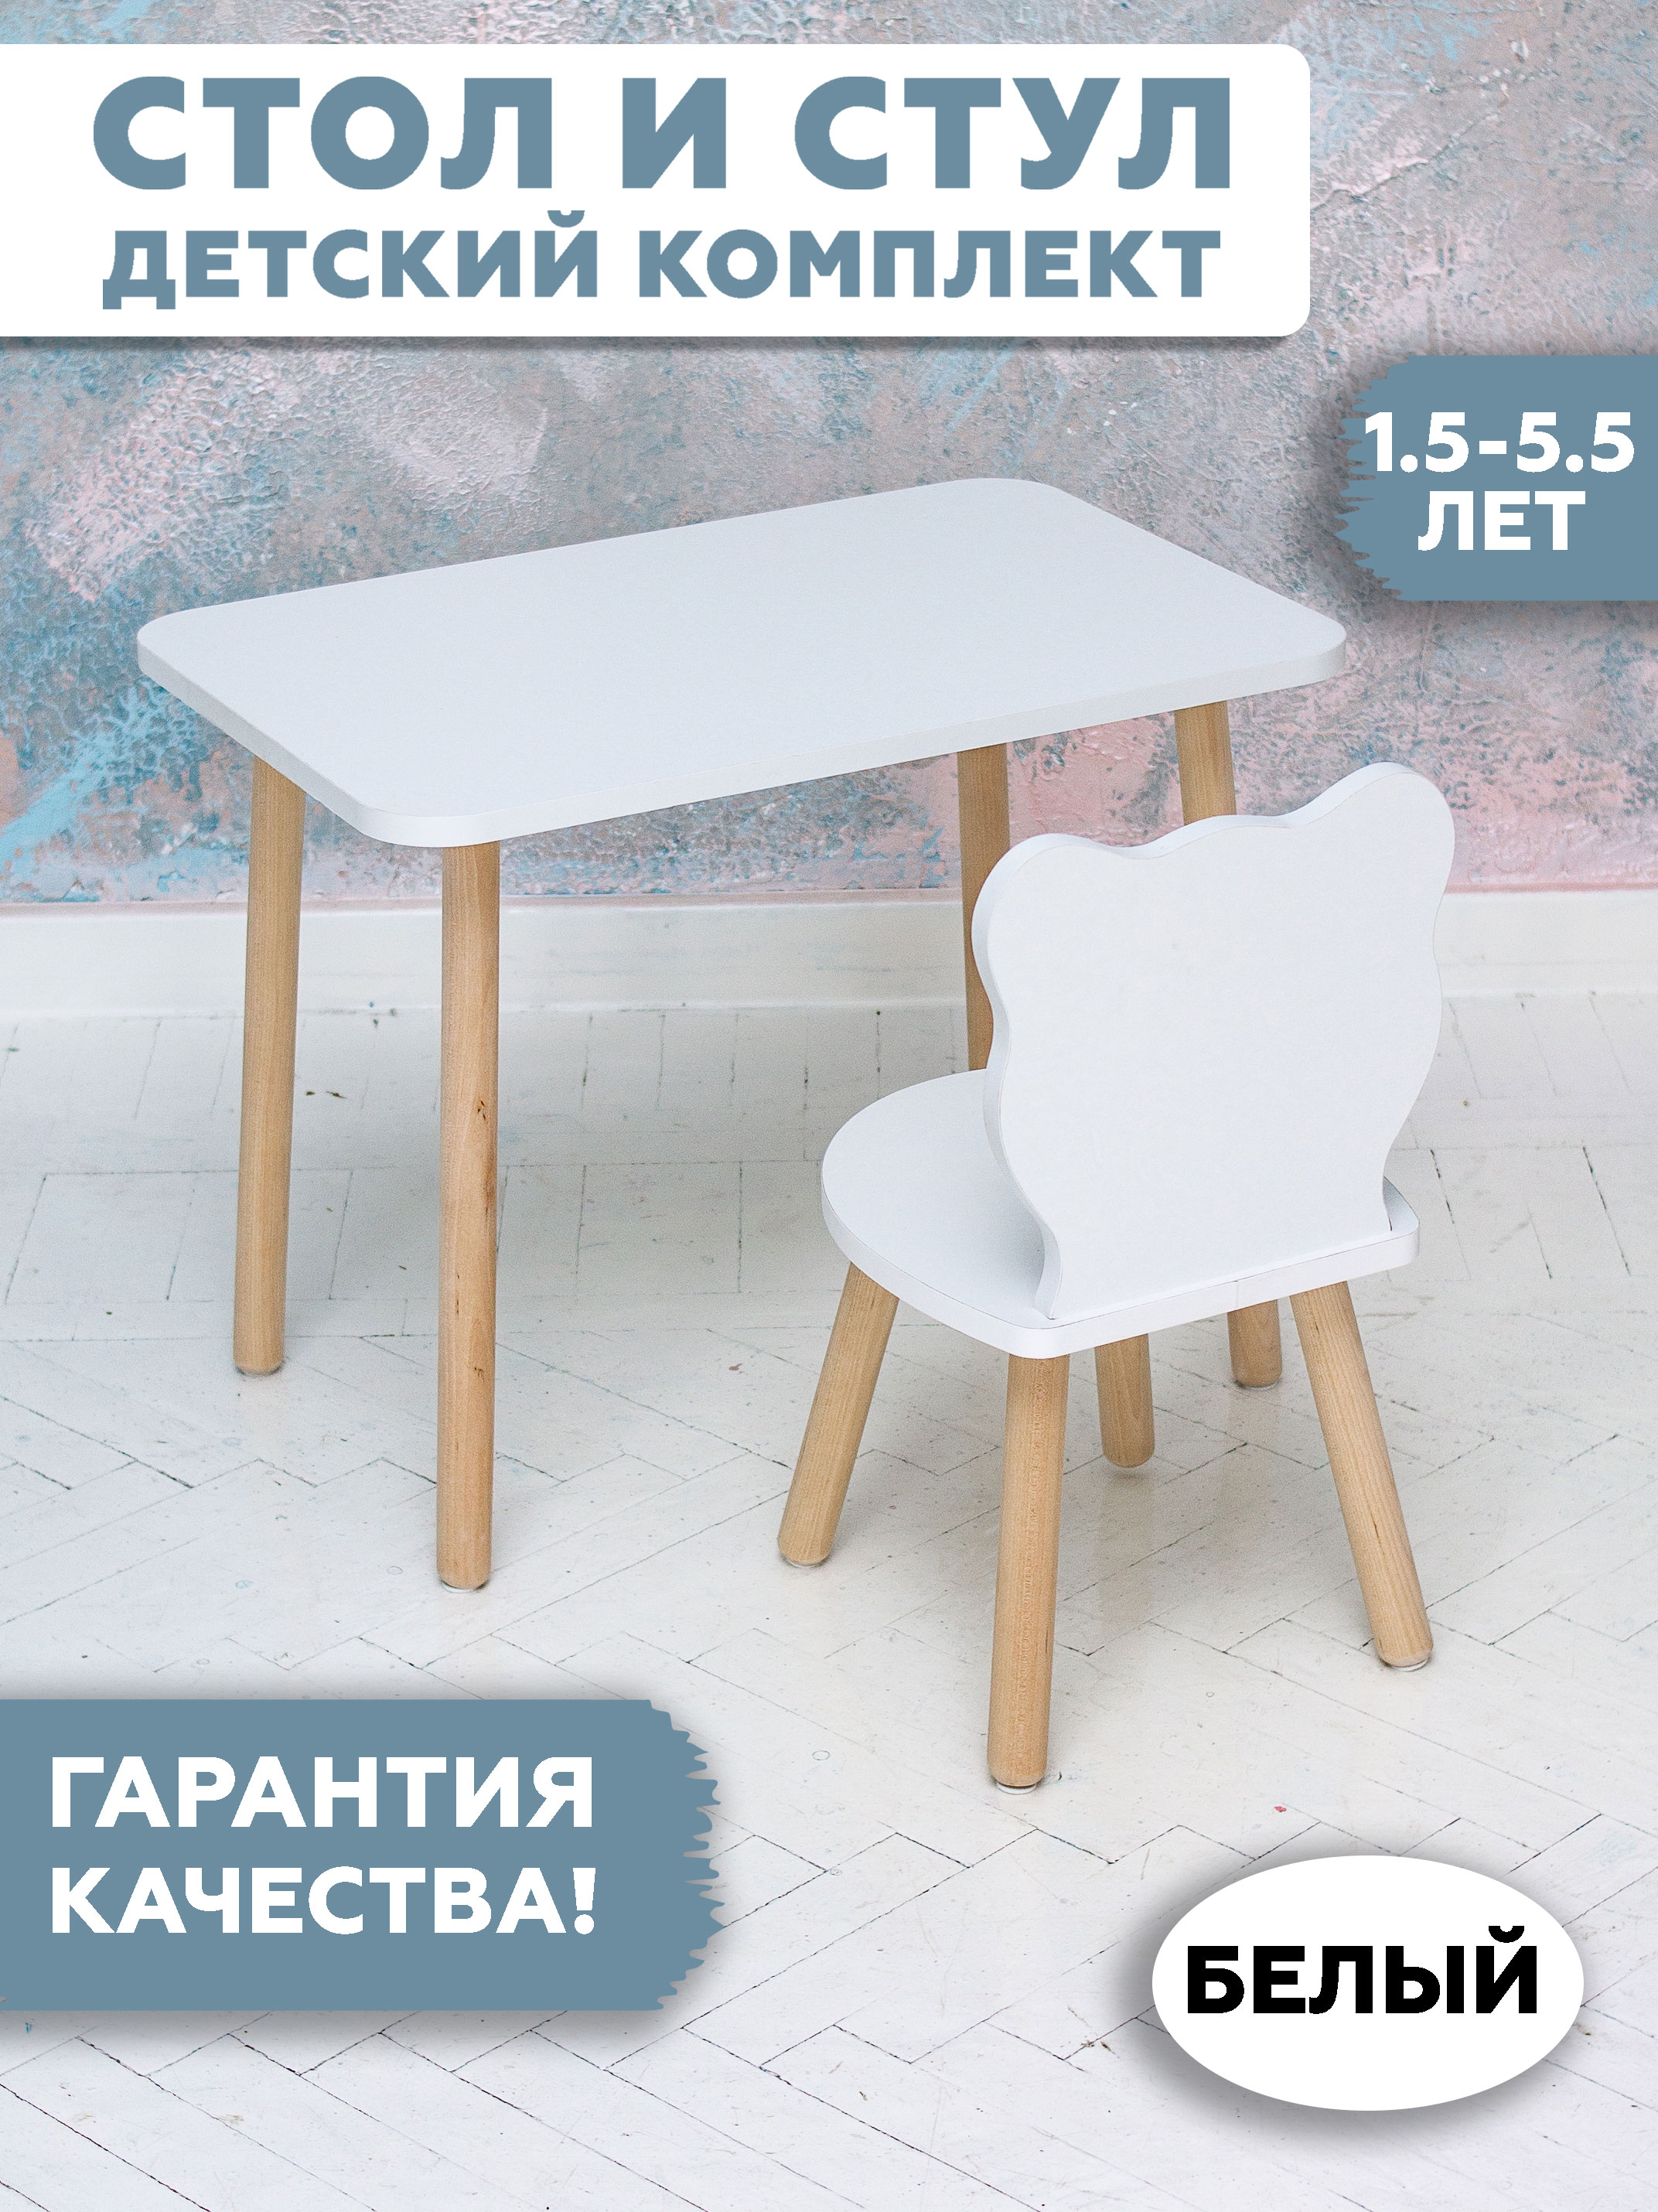 Комплект детской мебели RuLes стол и стул мишка, ножки цилиндрической формы без носочков мишка самый русский зверь